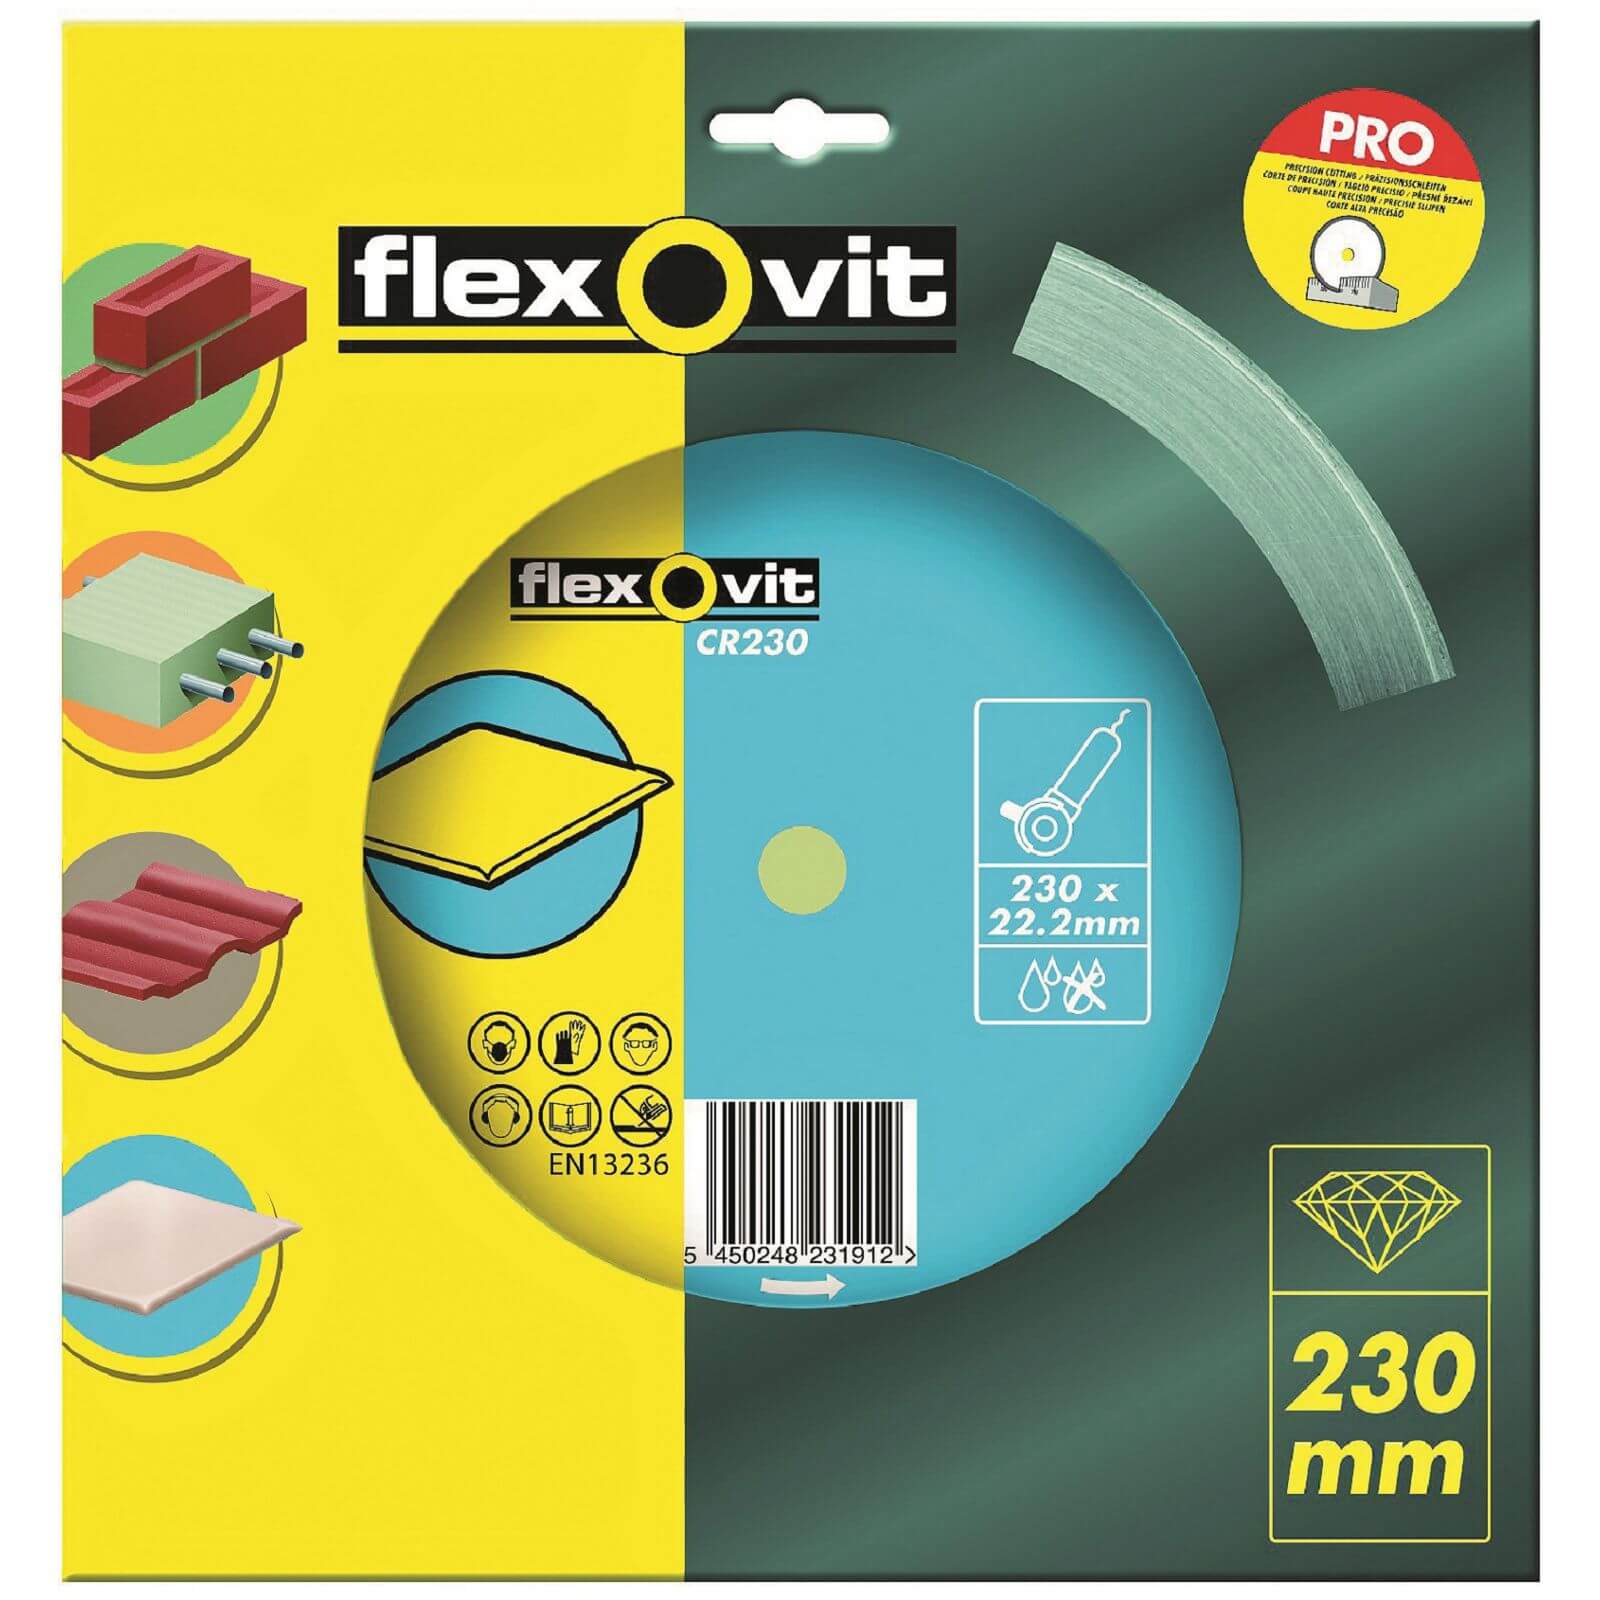 Flexovit Continuous Rim Diamond Blade - 230mm